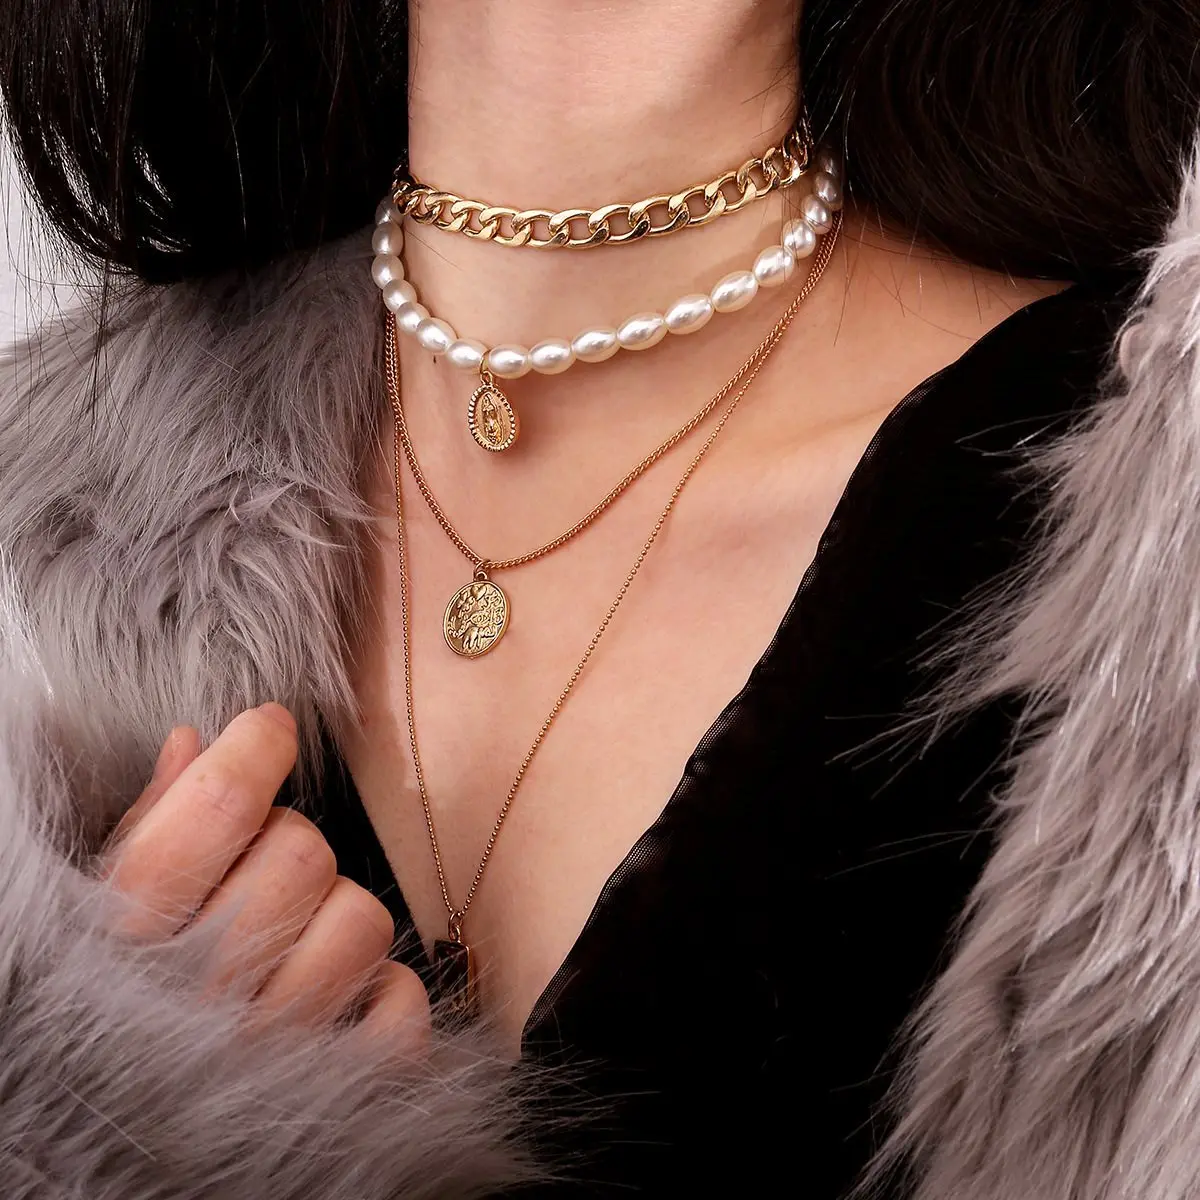 HUANZHI Новая мода золотистый цвет, много слоев цепочки из монеток жемчужные ожерелья геометрические хрустальные подвески золотые ожерелья для женщин